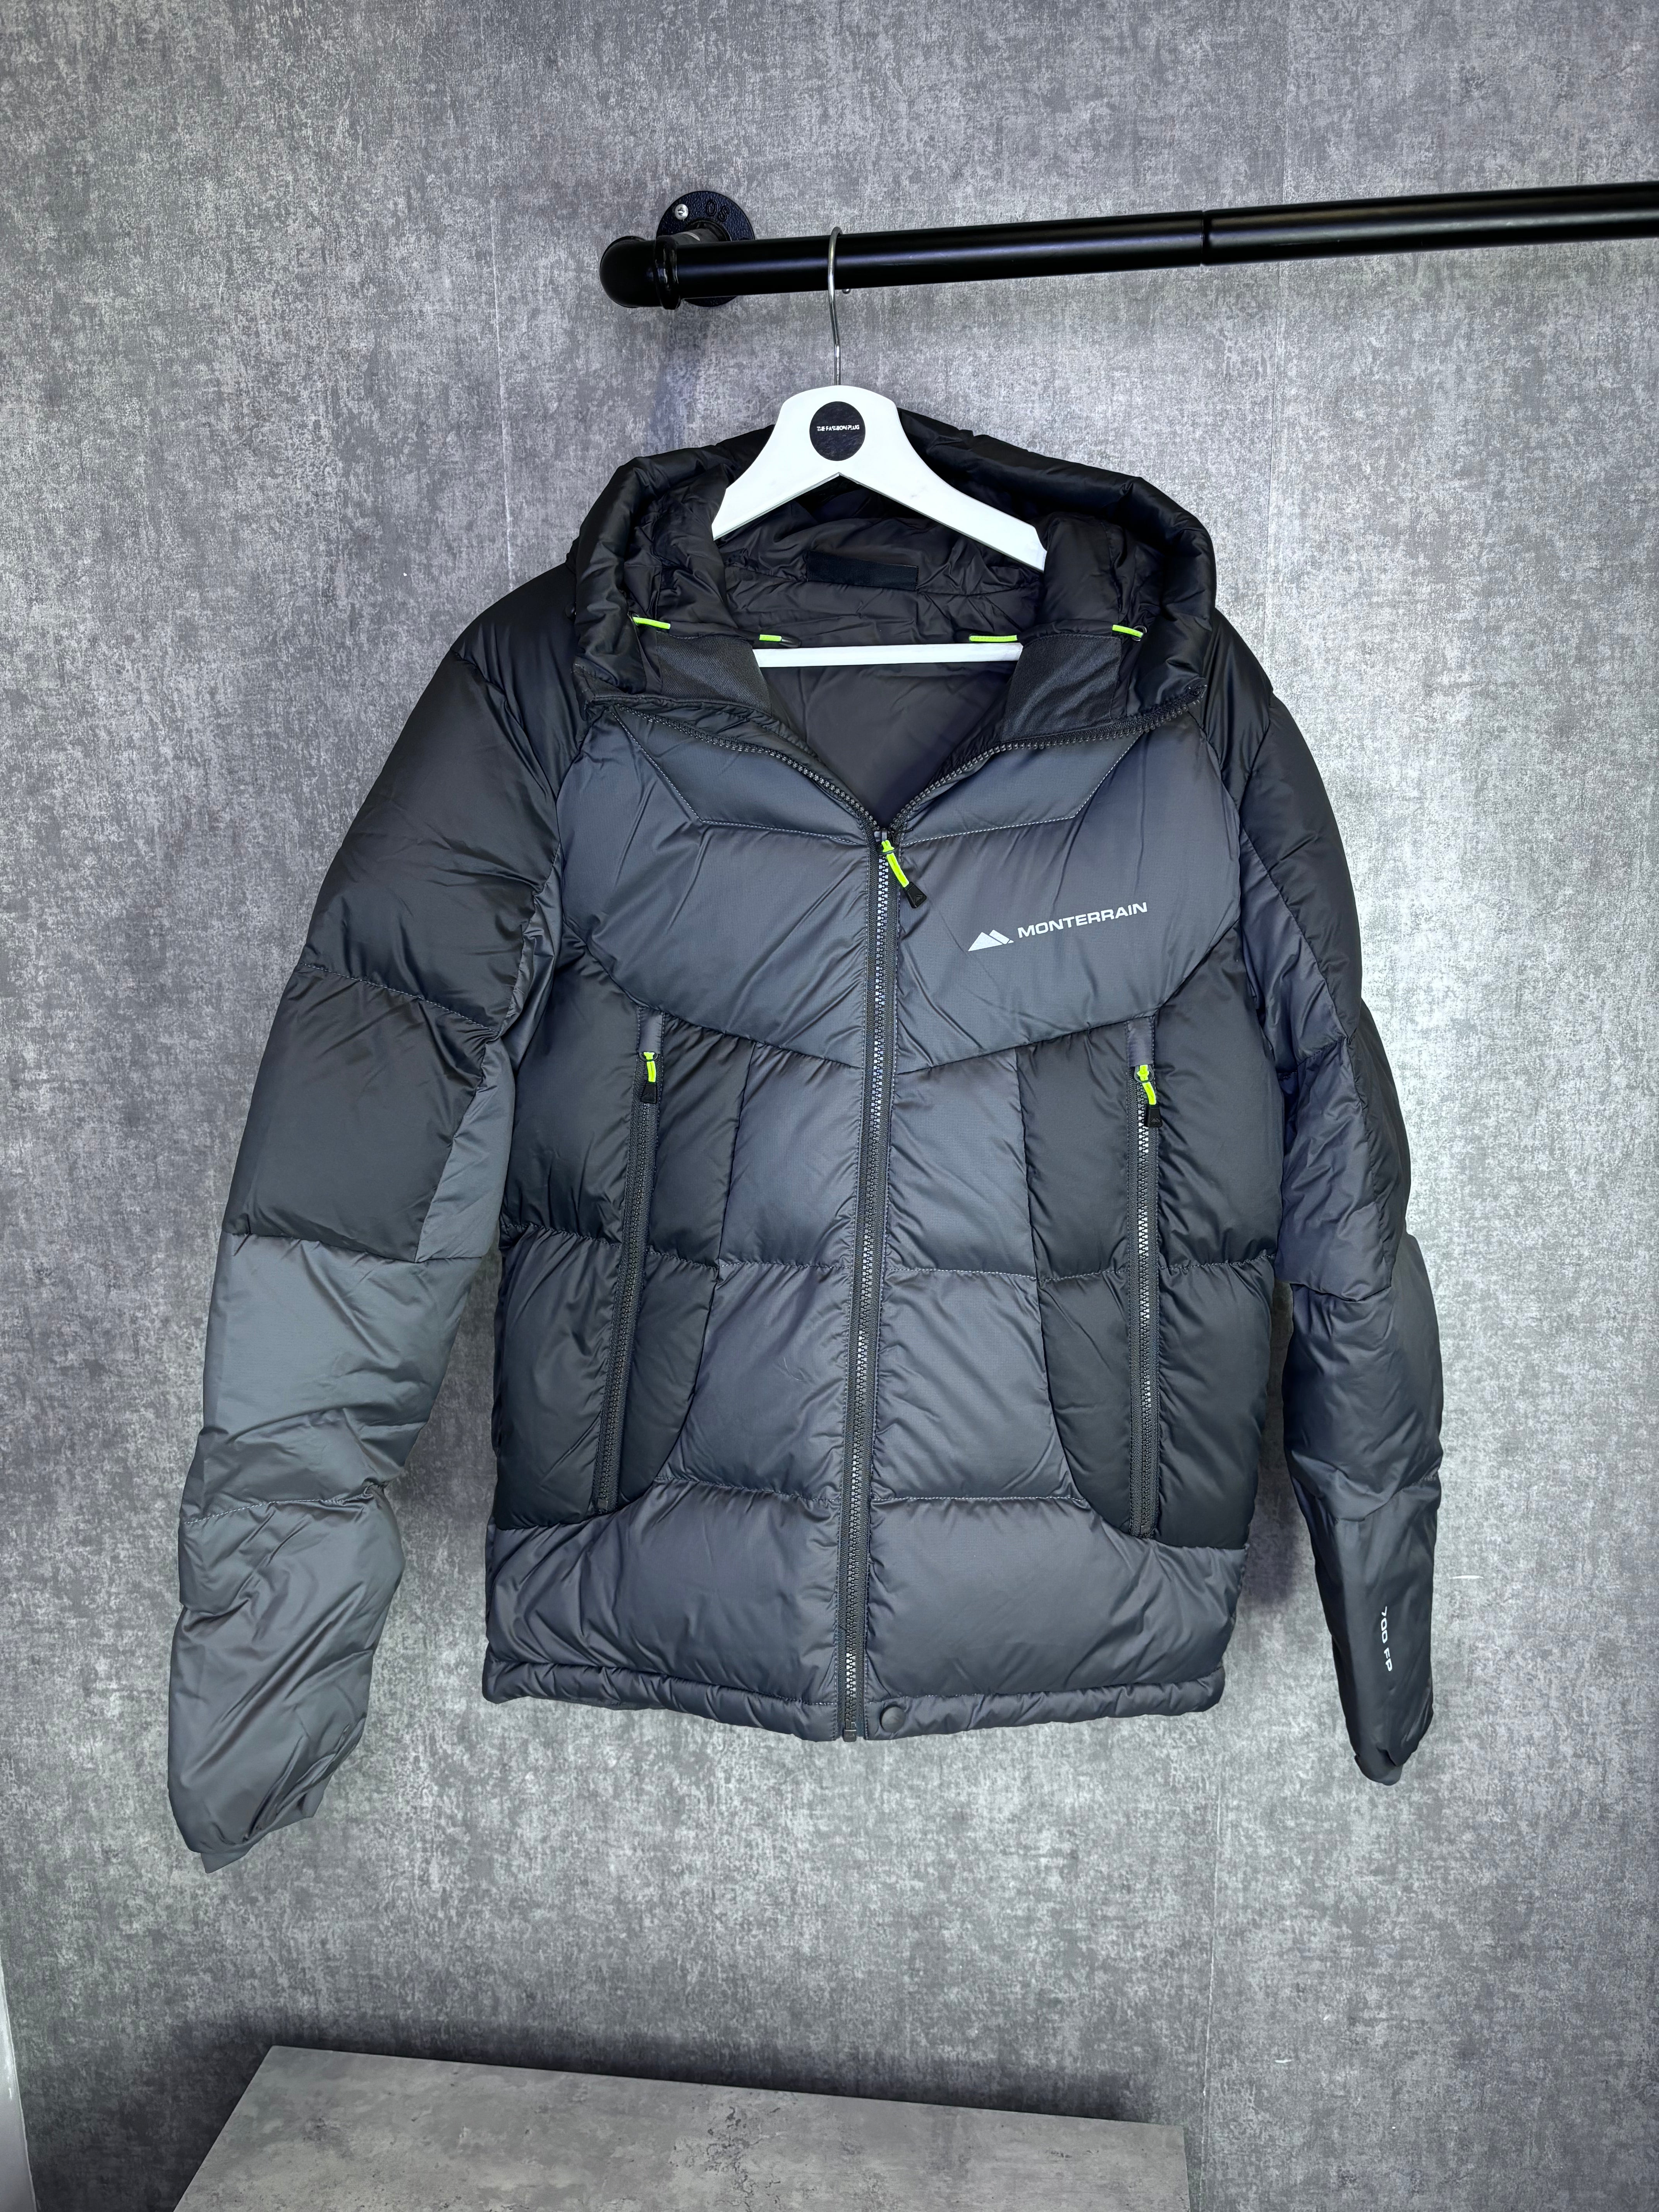 Monterrain jacket “Black/Grey/Volt